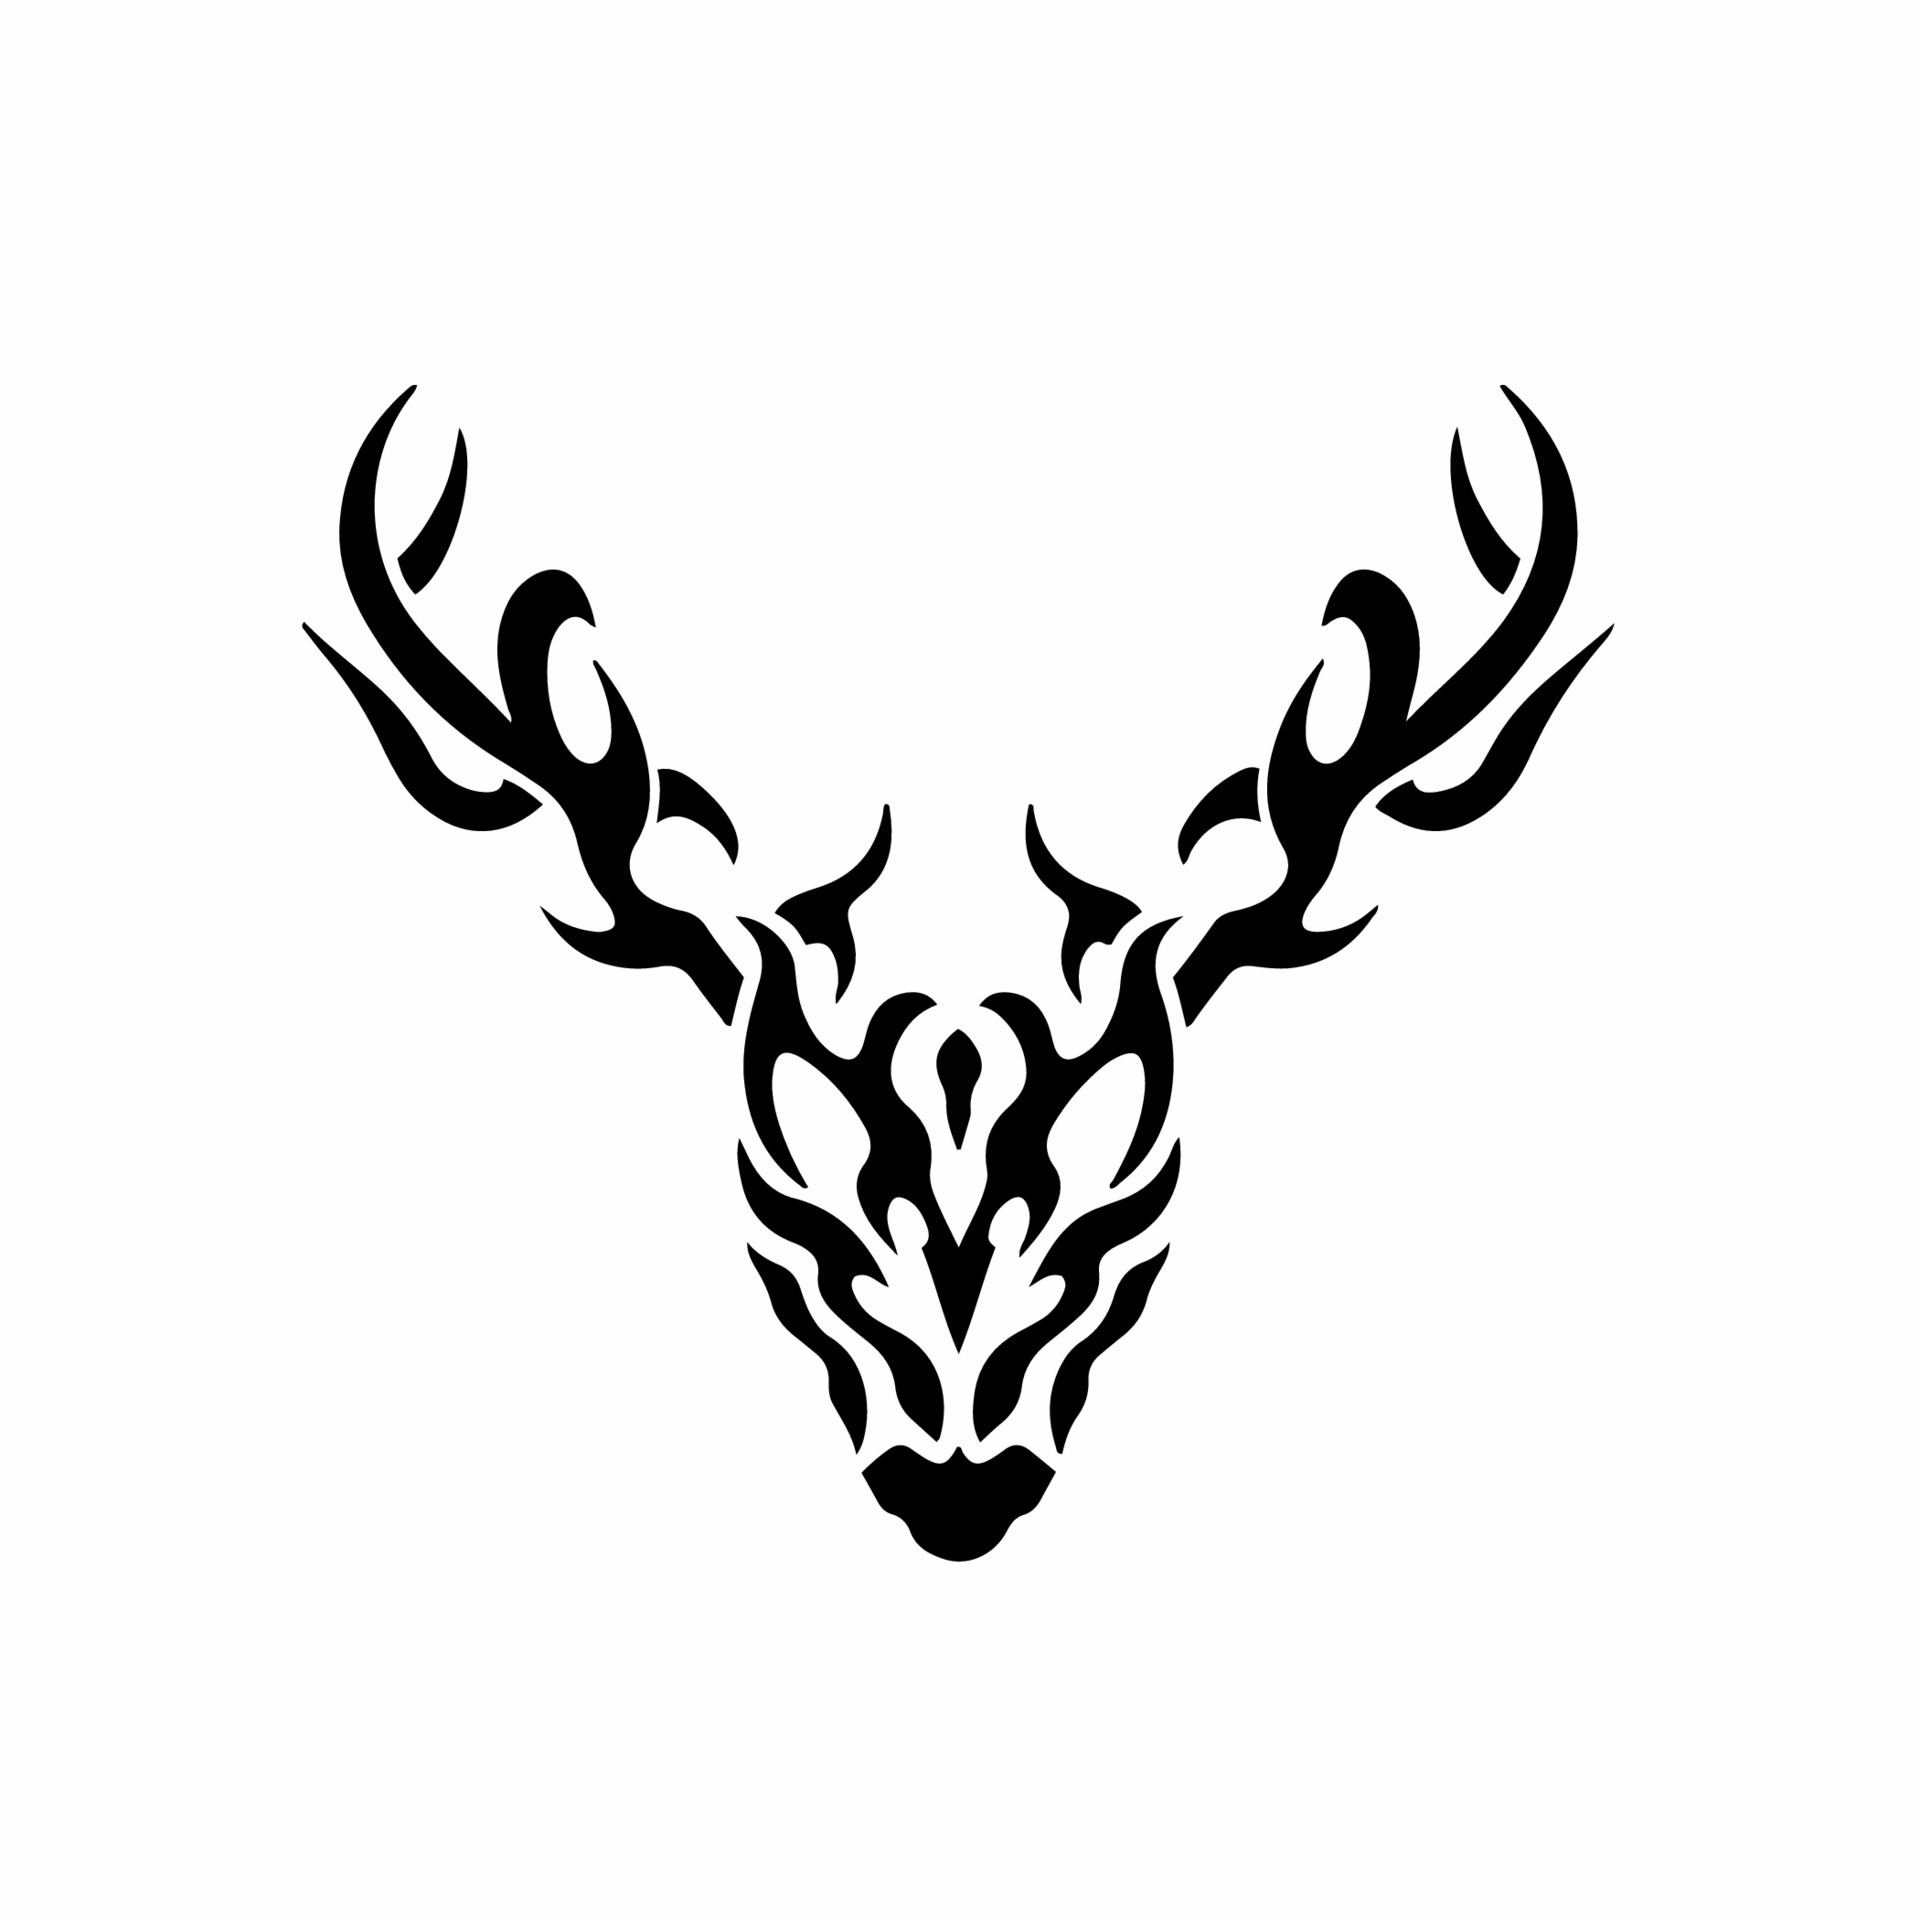 Tribal Deer Logo. Tattoo Design. Stencil Vector Illustration 16189178  Vector Art at Vecteezy